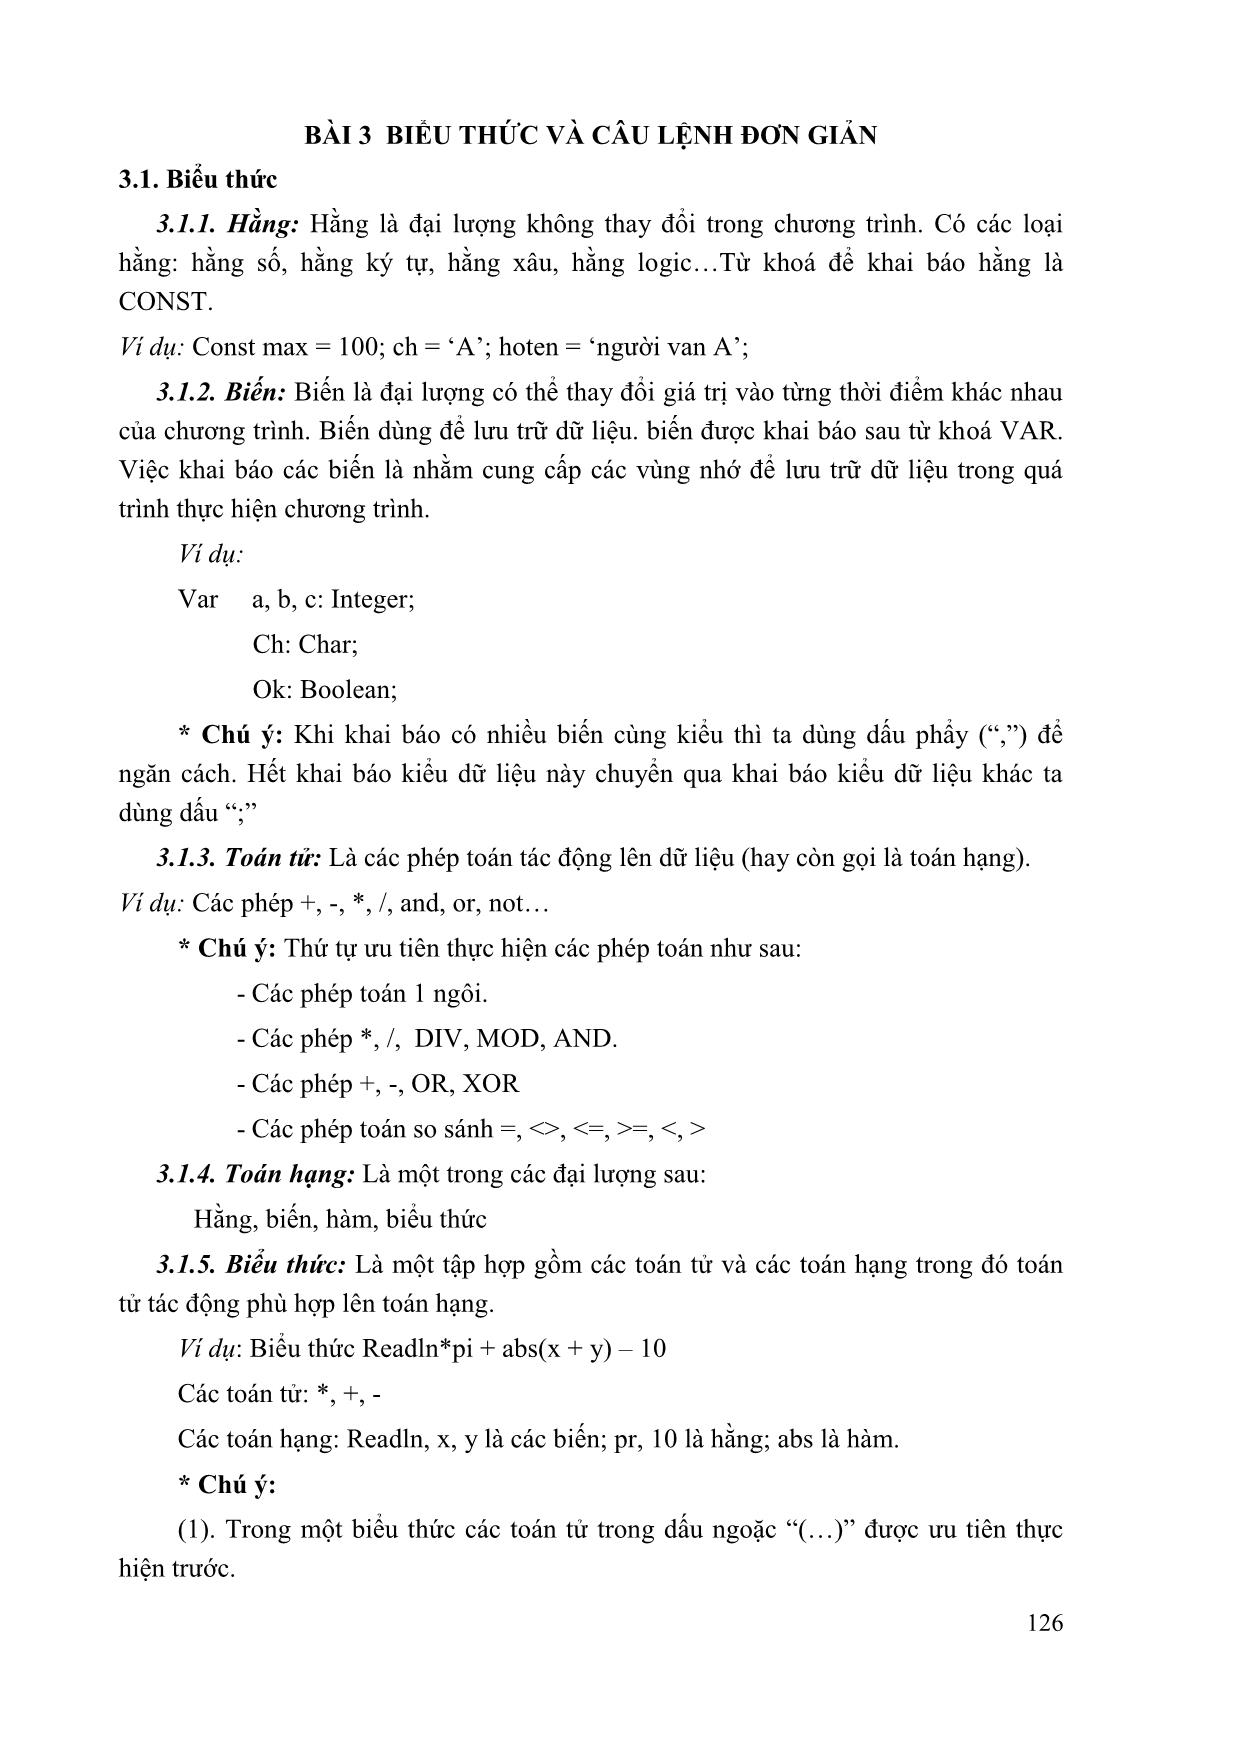 Giáo trình Tin học đại cương (Phần 2) trang 8